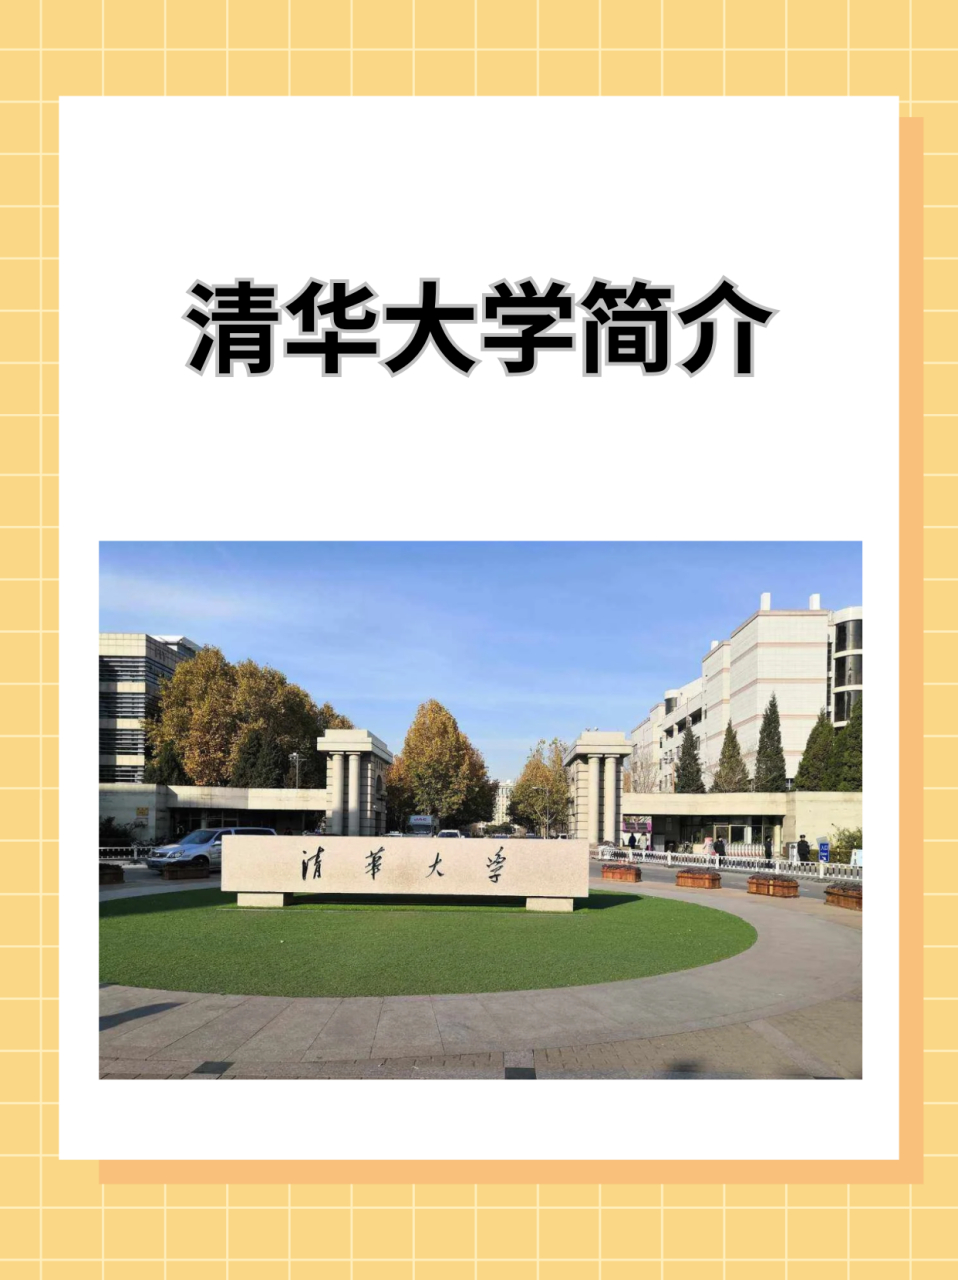 今天带大家了解一下清华大学  清华大学位于北京市海淀区,是中华人民